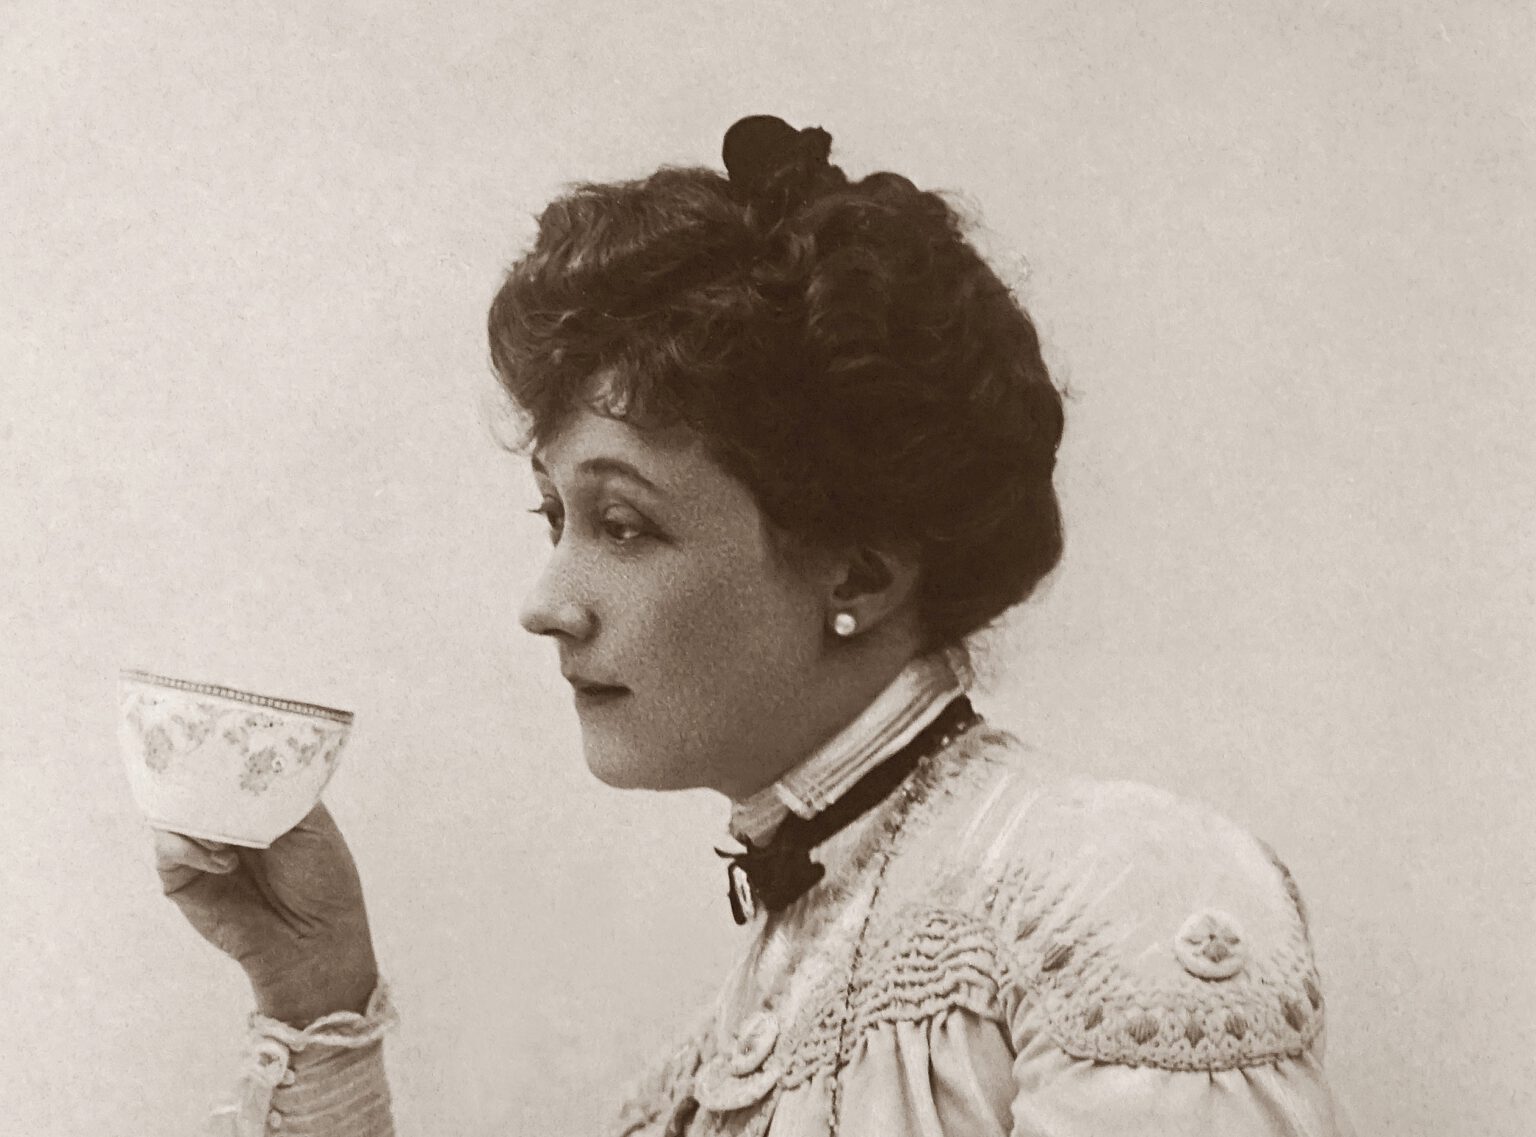 Oude foto van vrouw die saliethee drinkt